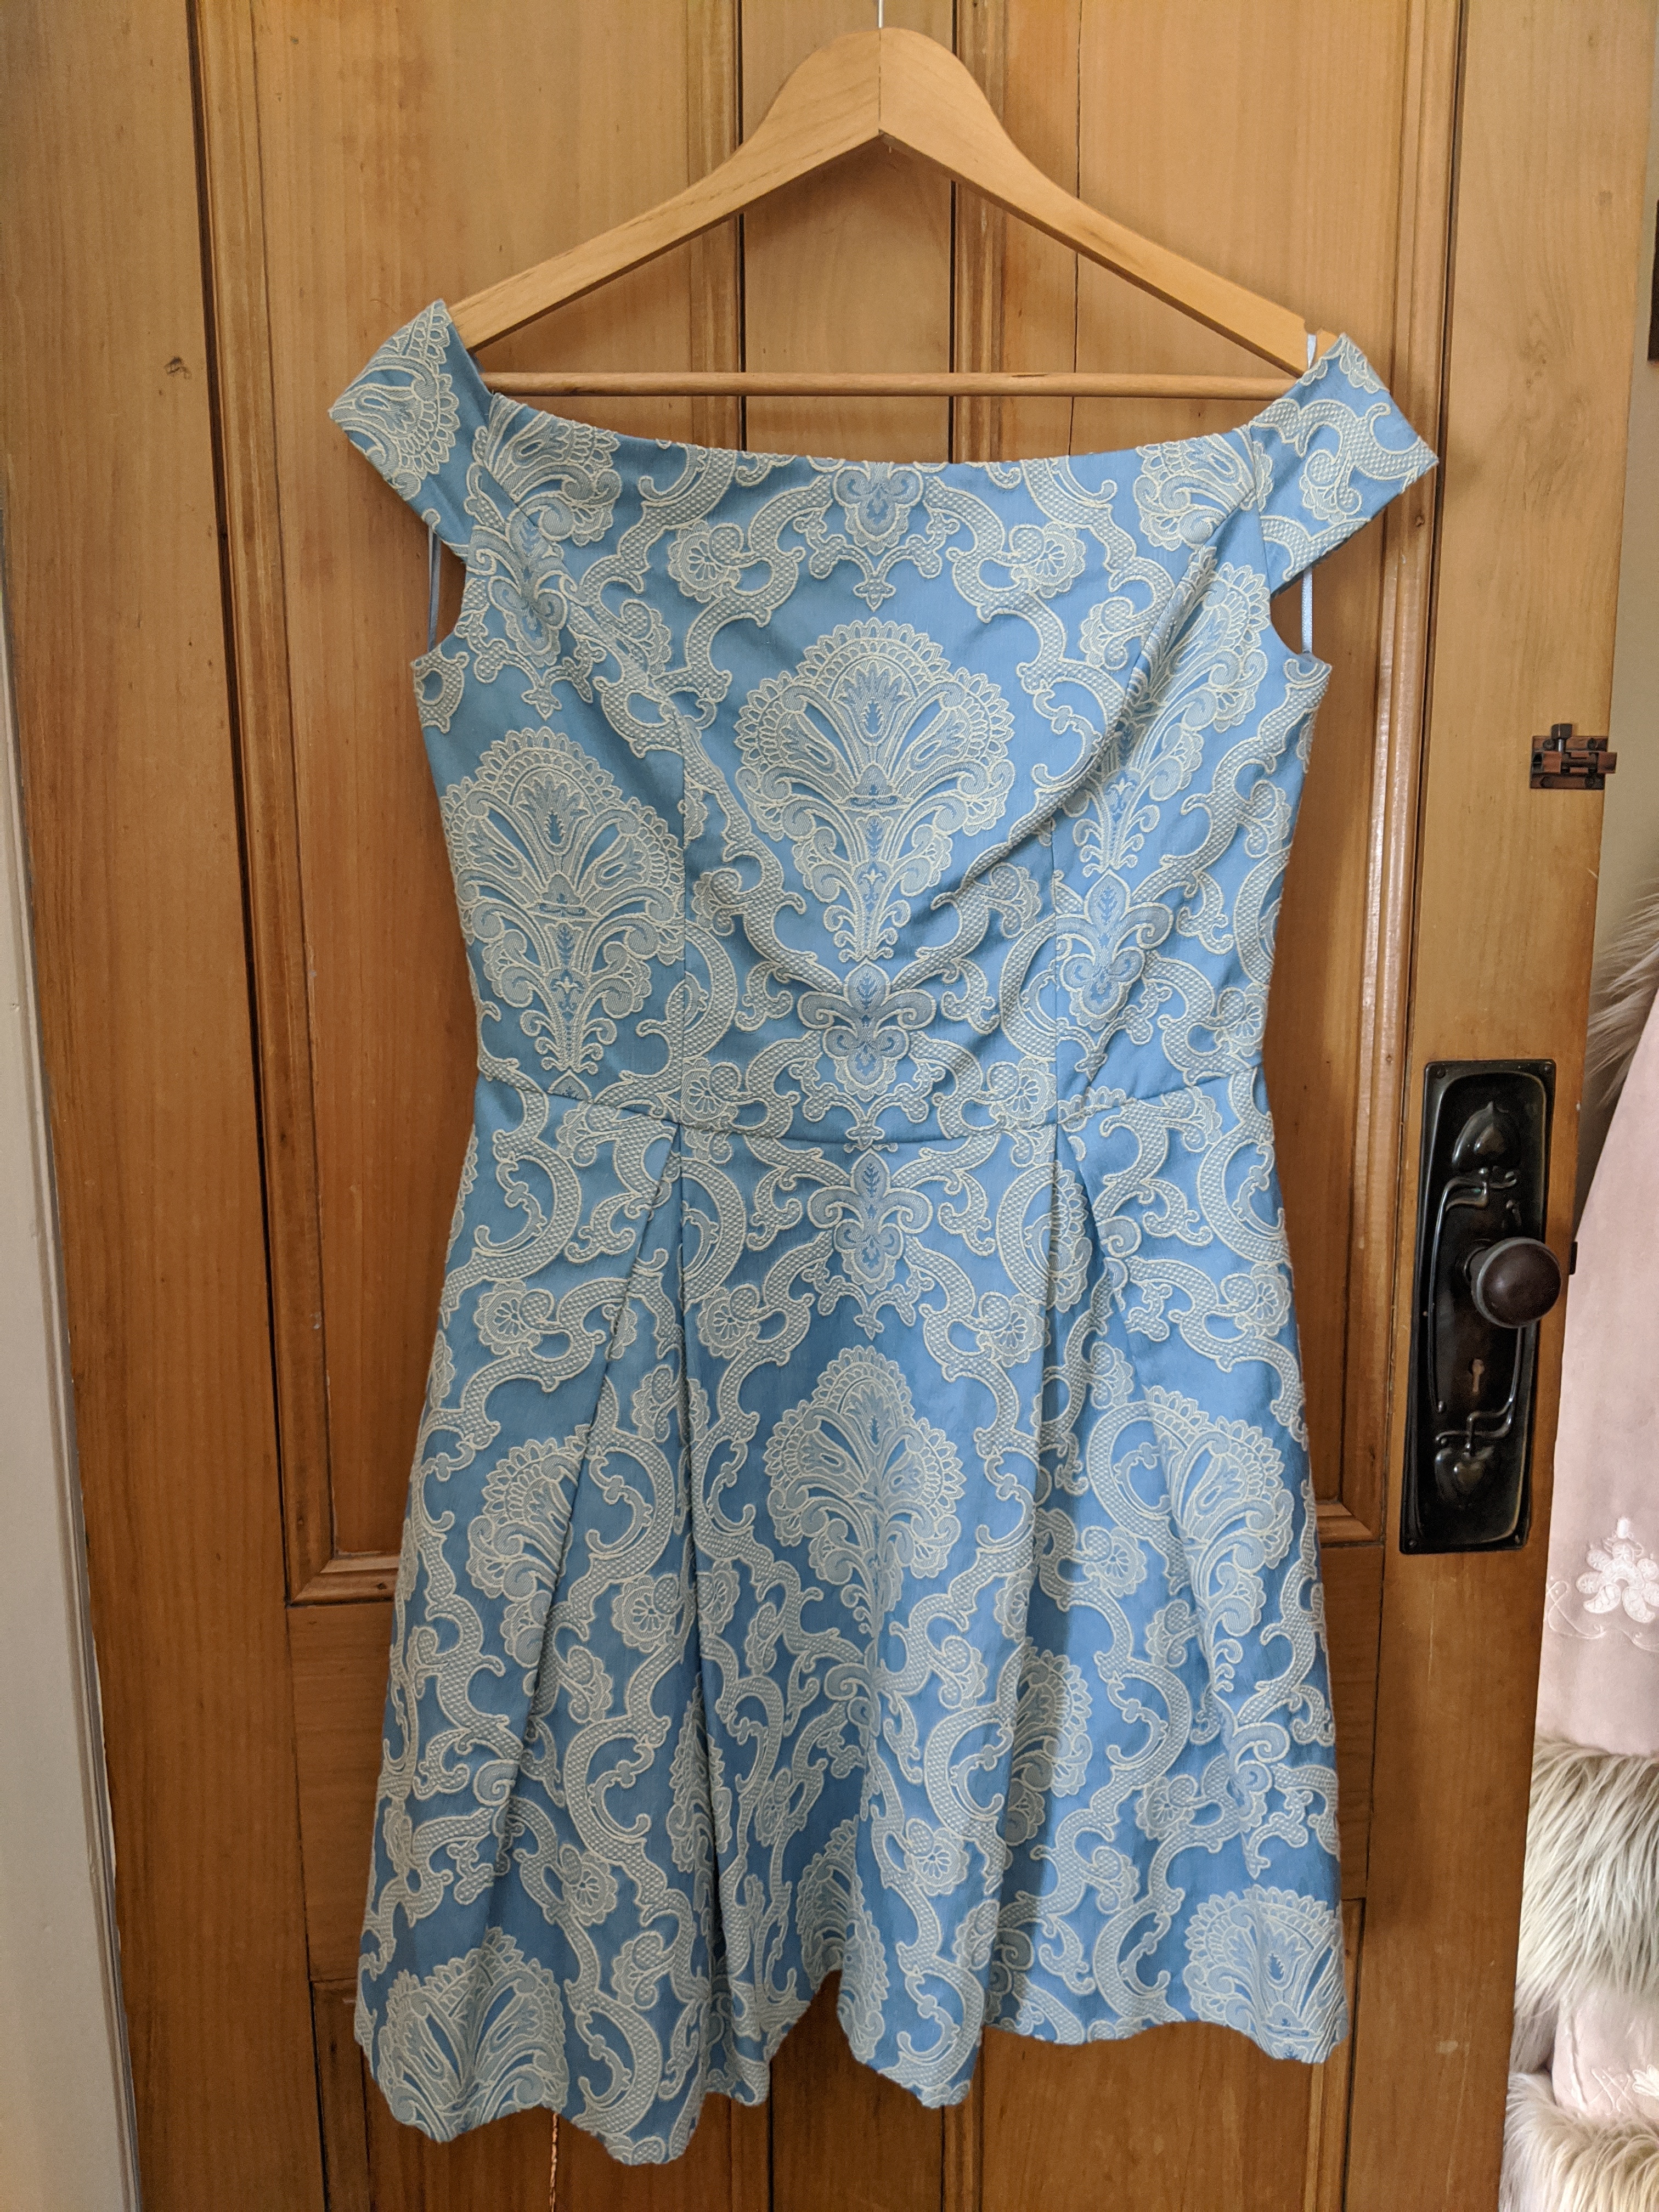 Karen Gillan Blue Dress Wallpapers